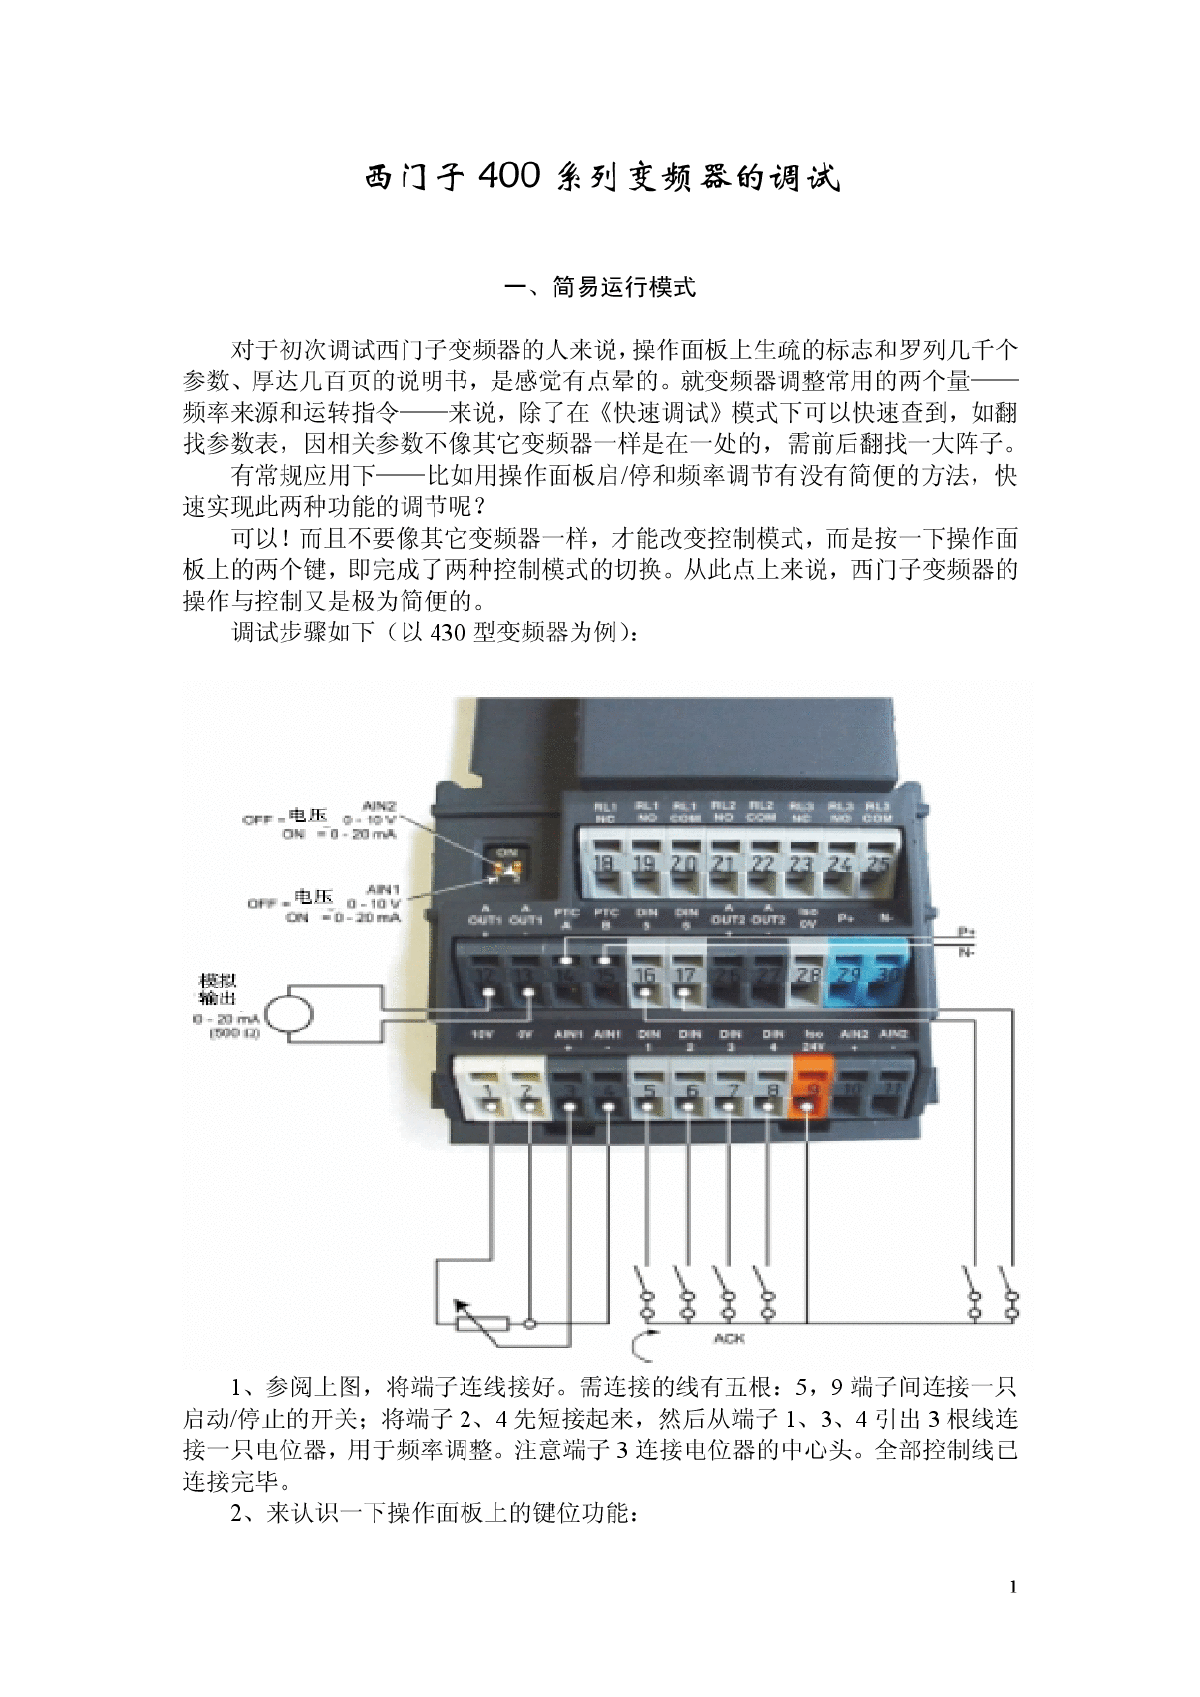 西门子400系列变频器的调试